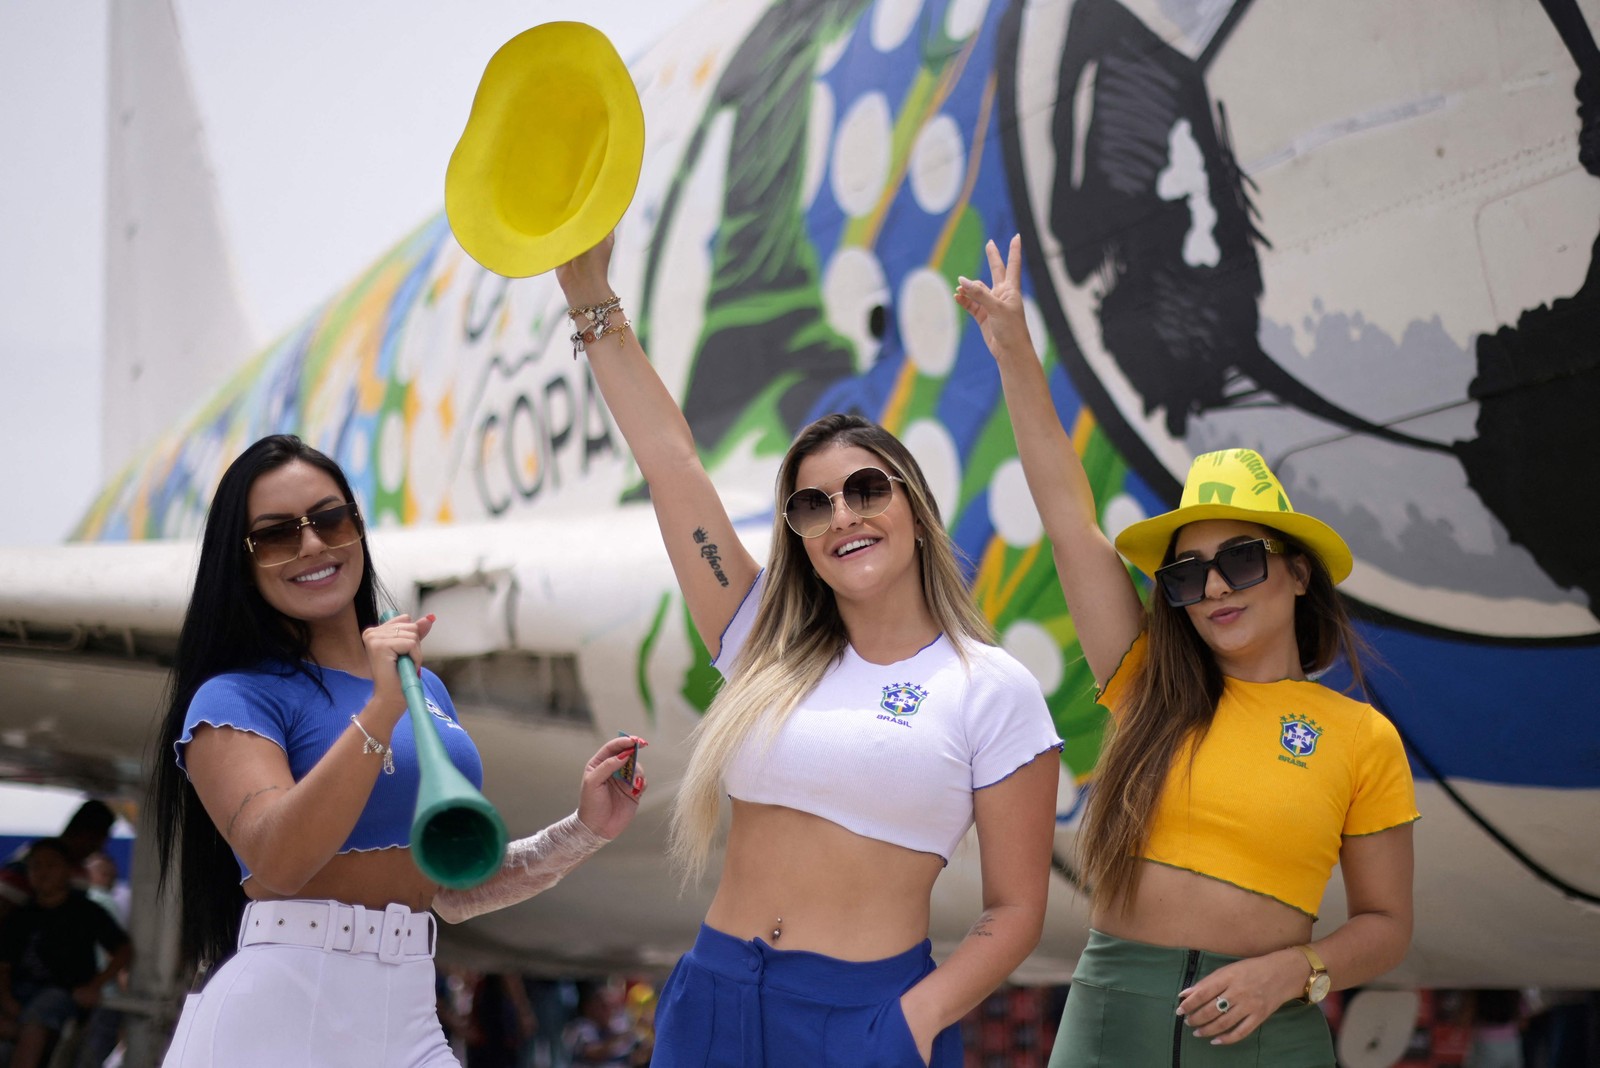 Torcedoras do Brasil posam em frente a um avião abandonado decorado com temas da seleção brasileira em um shopping em Contagem, Minas Gerais — Foto: DOUGLAS MAGNO / AFP